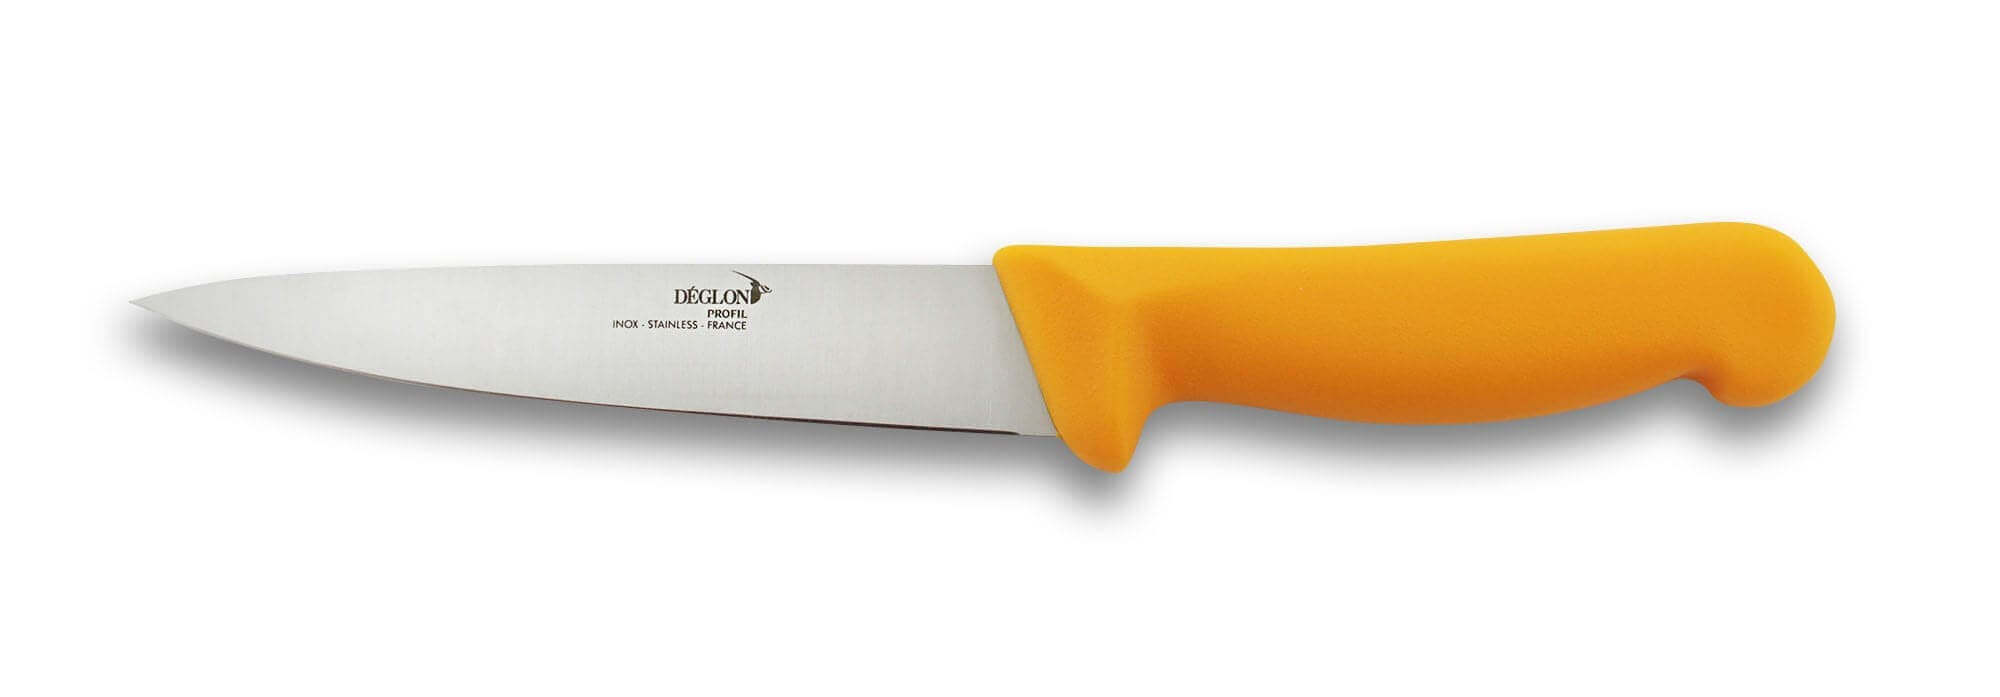 Couteau scie à tomates ustensile de cuisine qualité Pro. Déglon